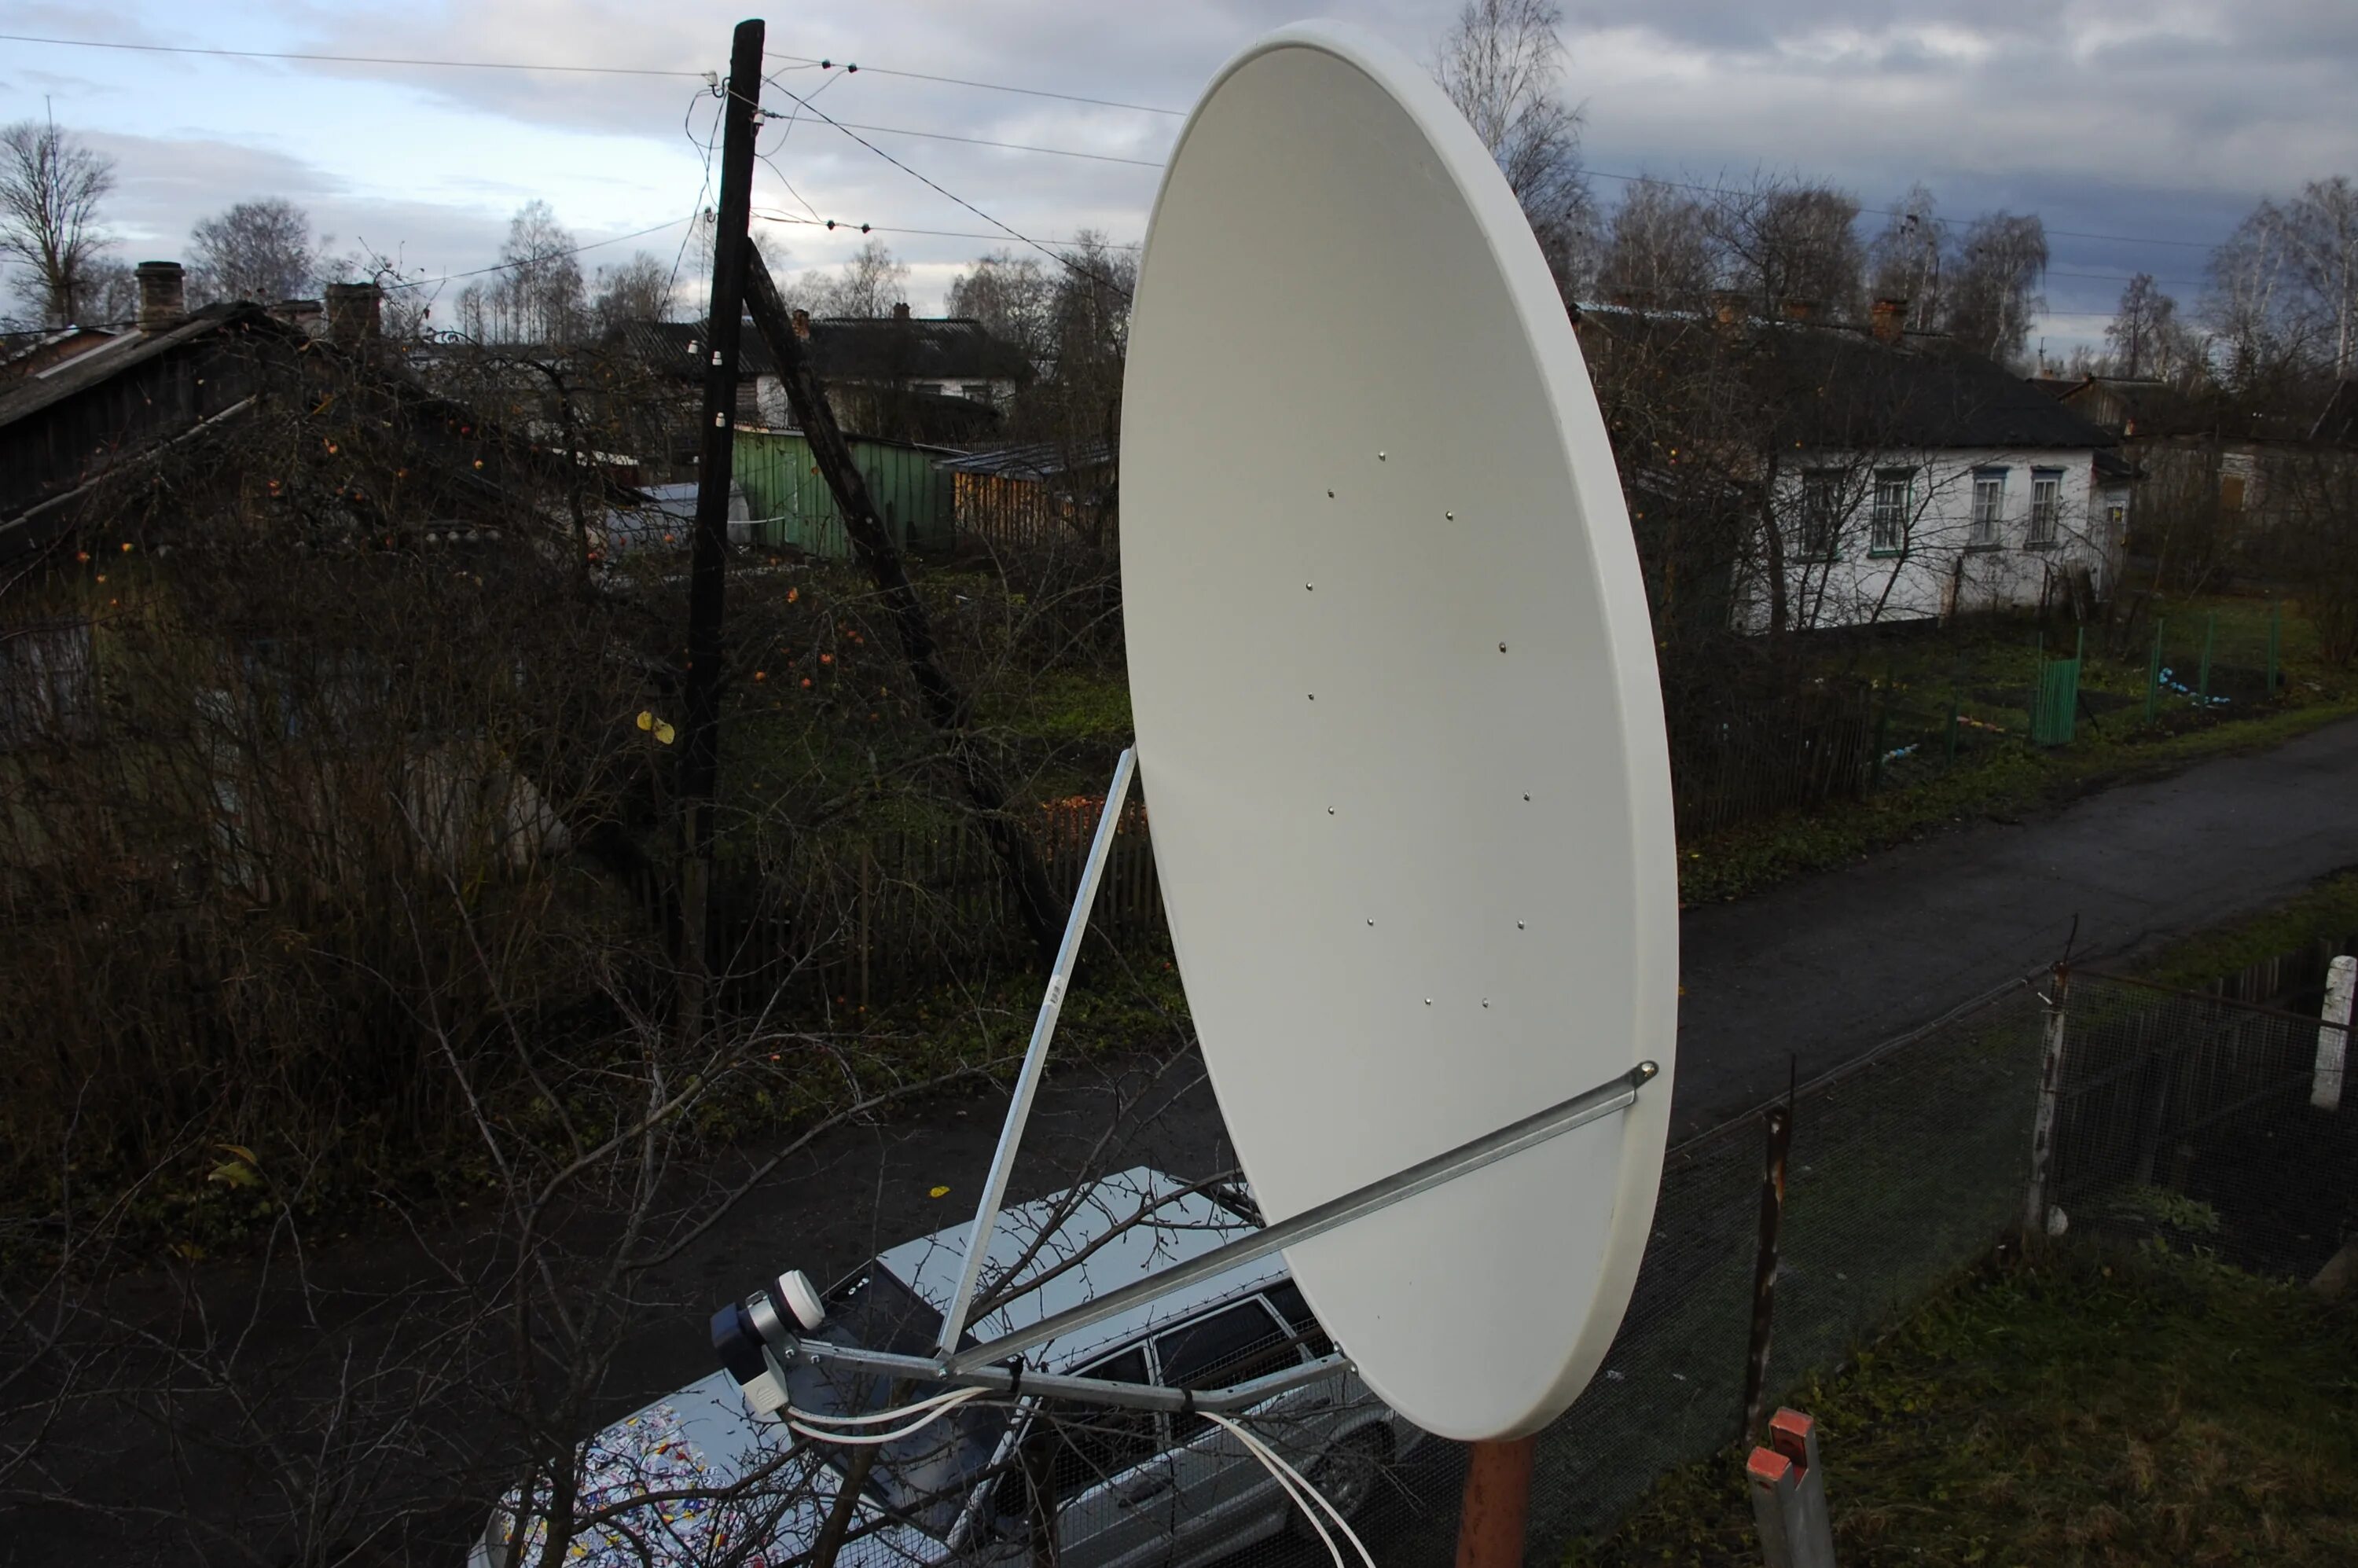 Головка тарелки. Спутниковая антенна (с головкой тарелка д90). Спутниковая антенна Euromax. Фокус параболической антенны.